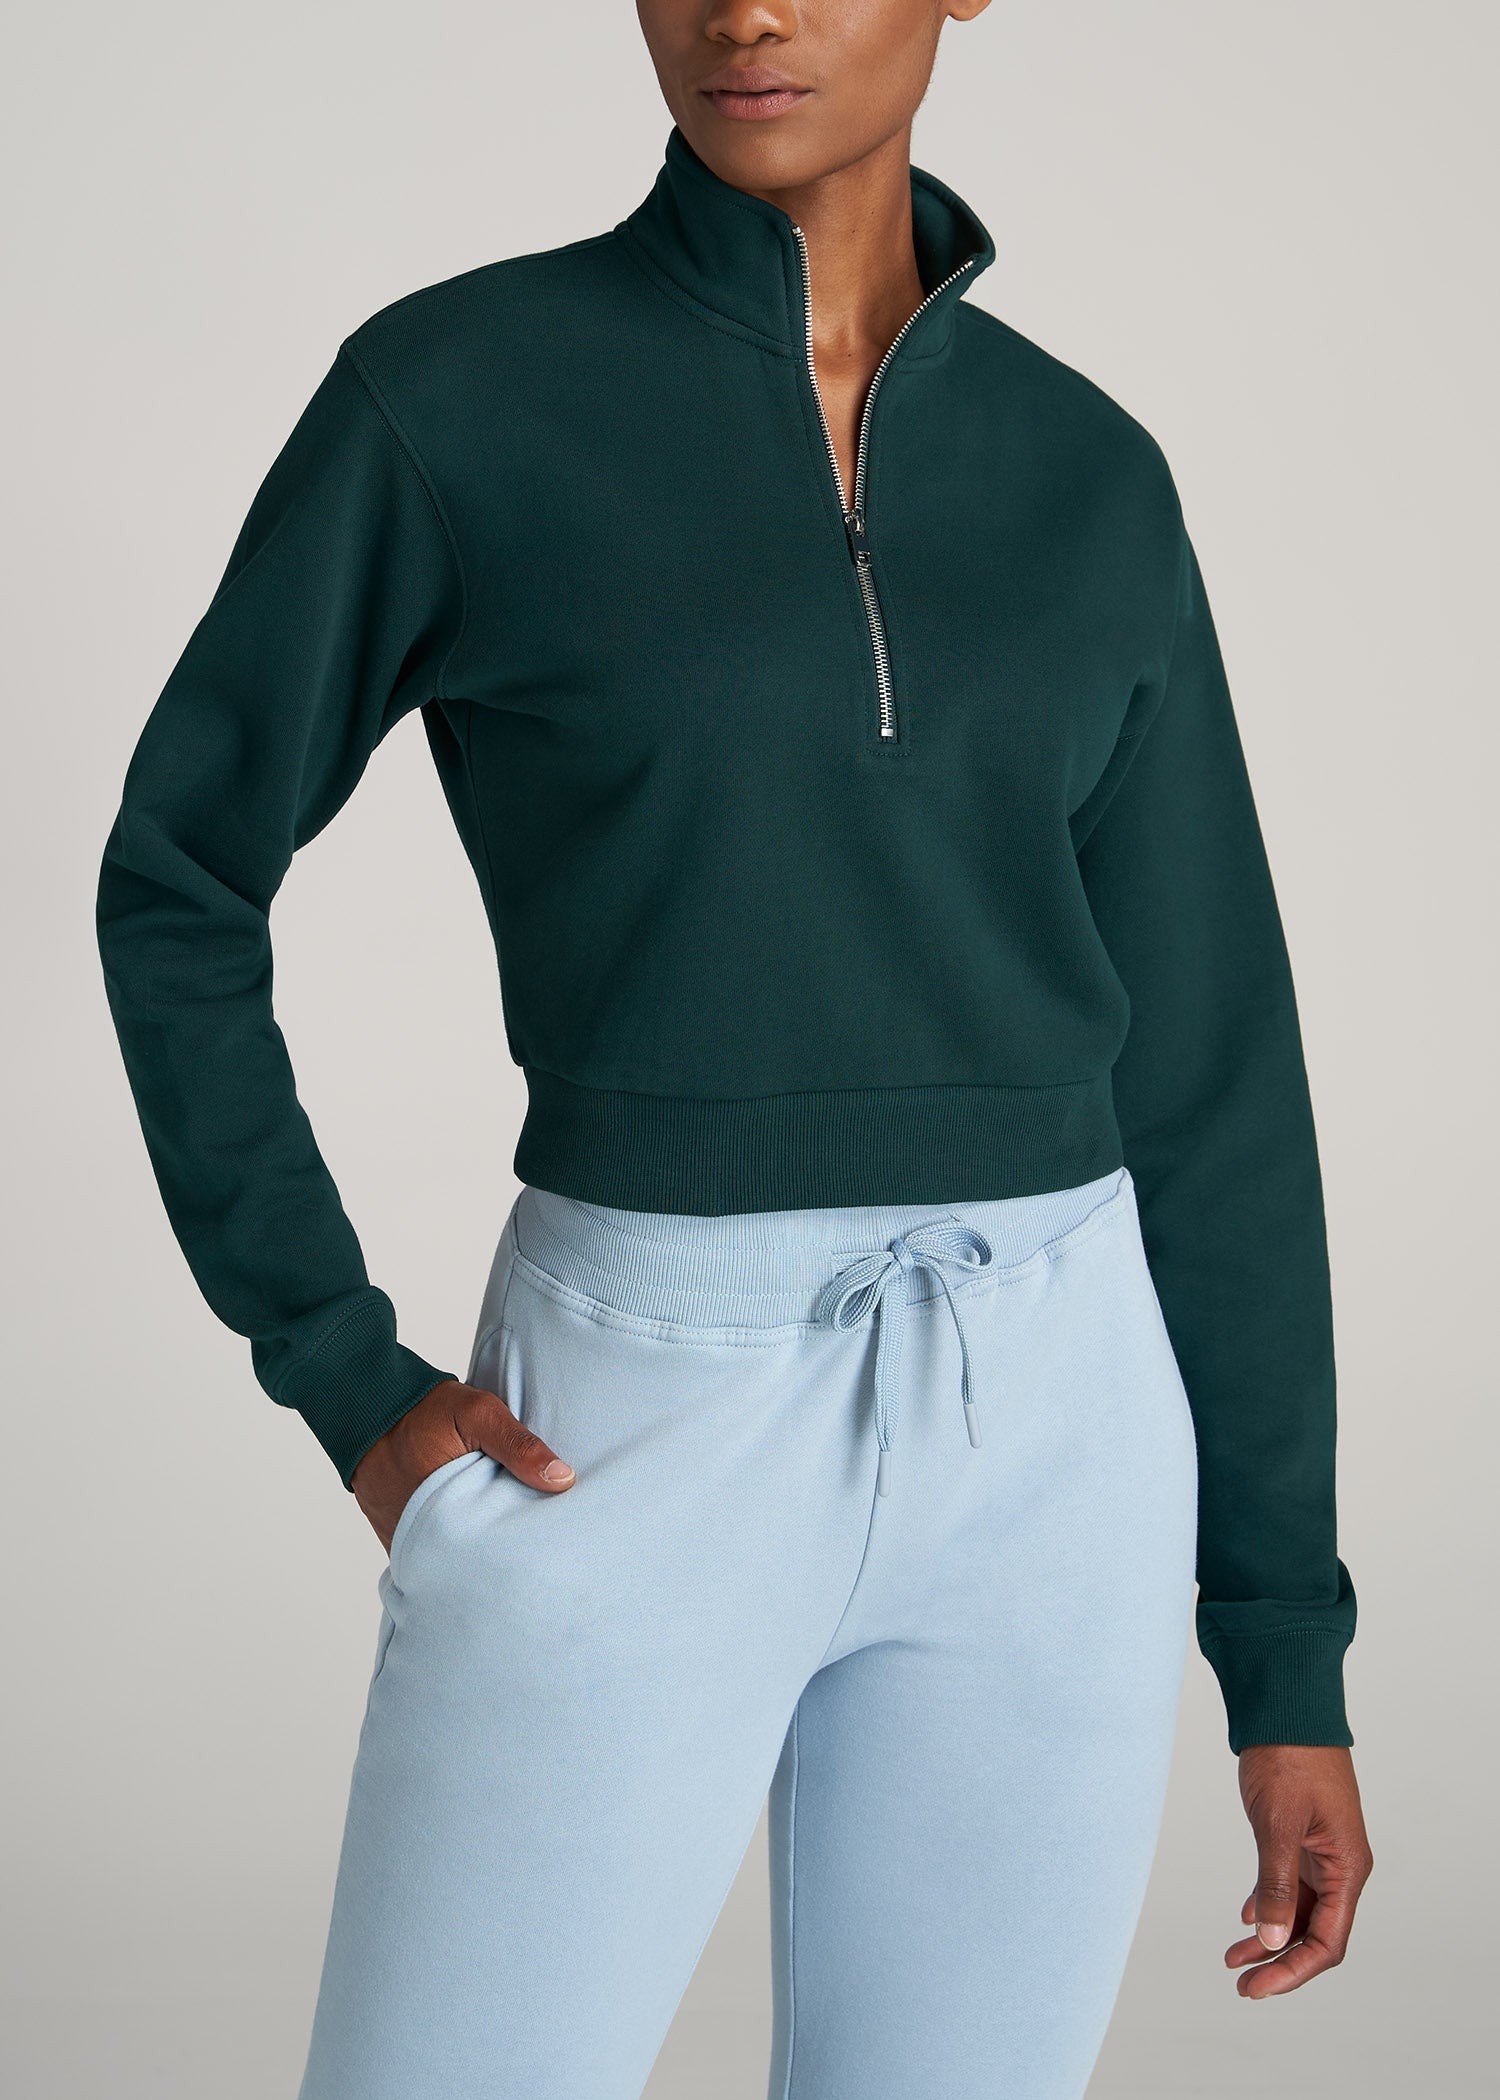 Women's Tall Wearever Fleece Crew Neck Cropped Sweatshirt Black